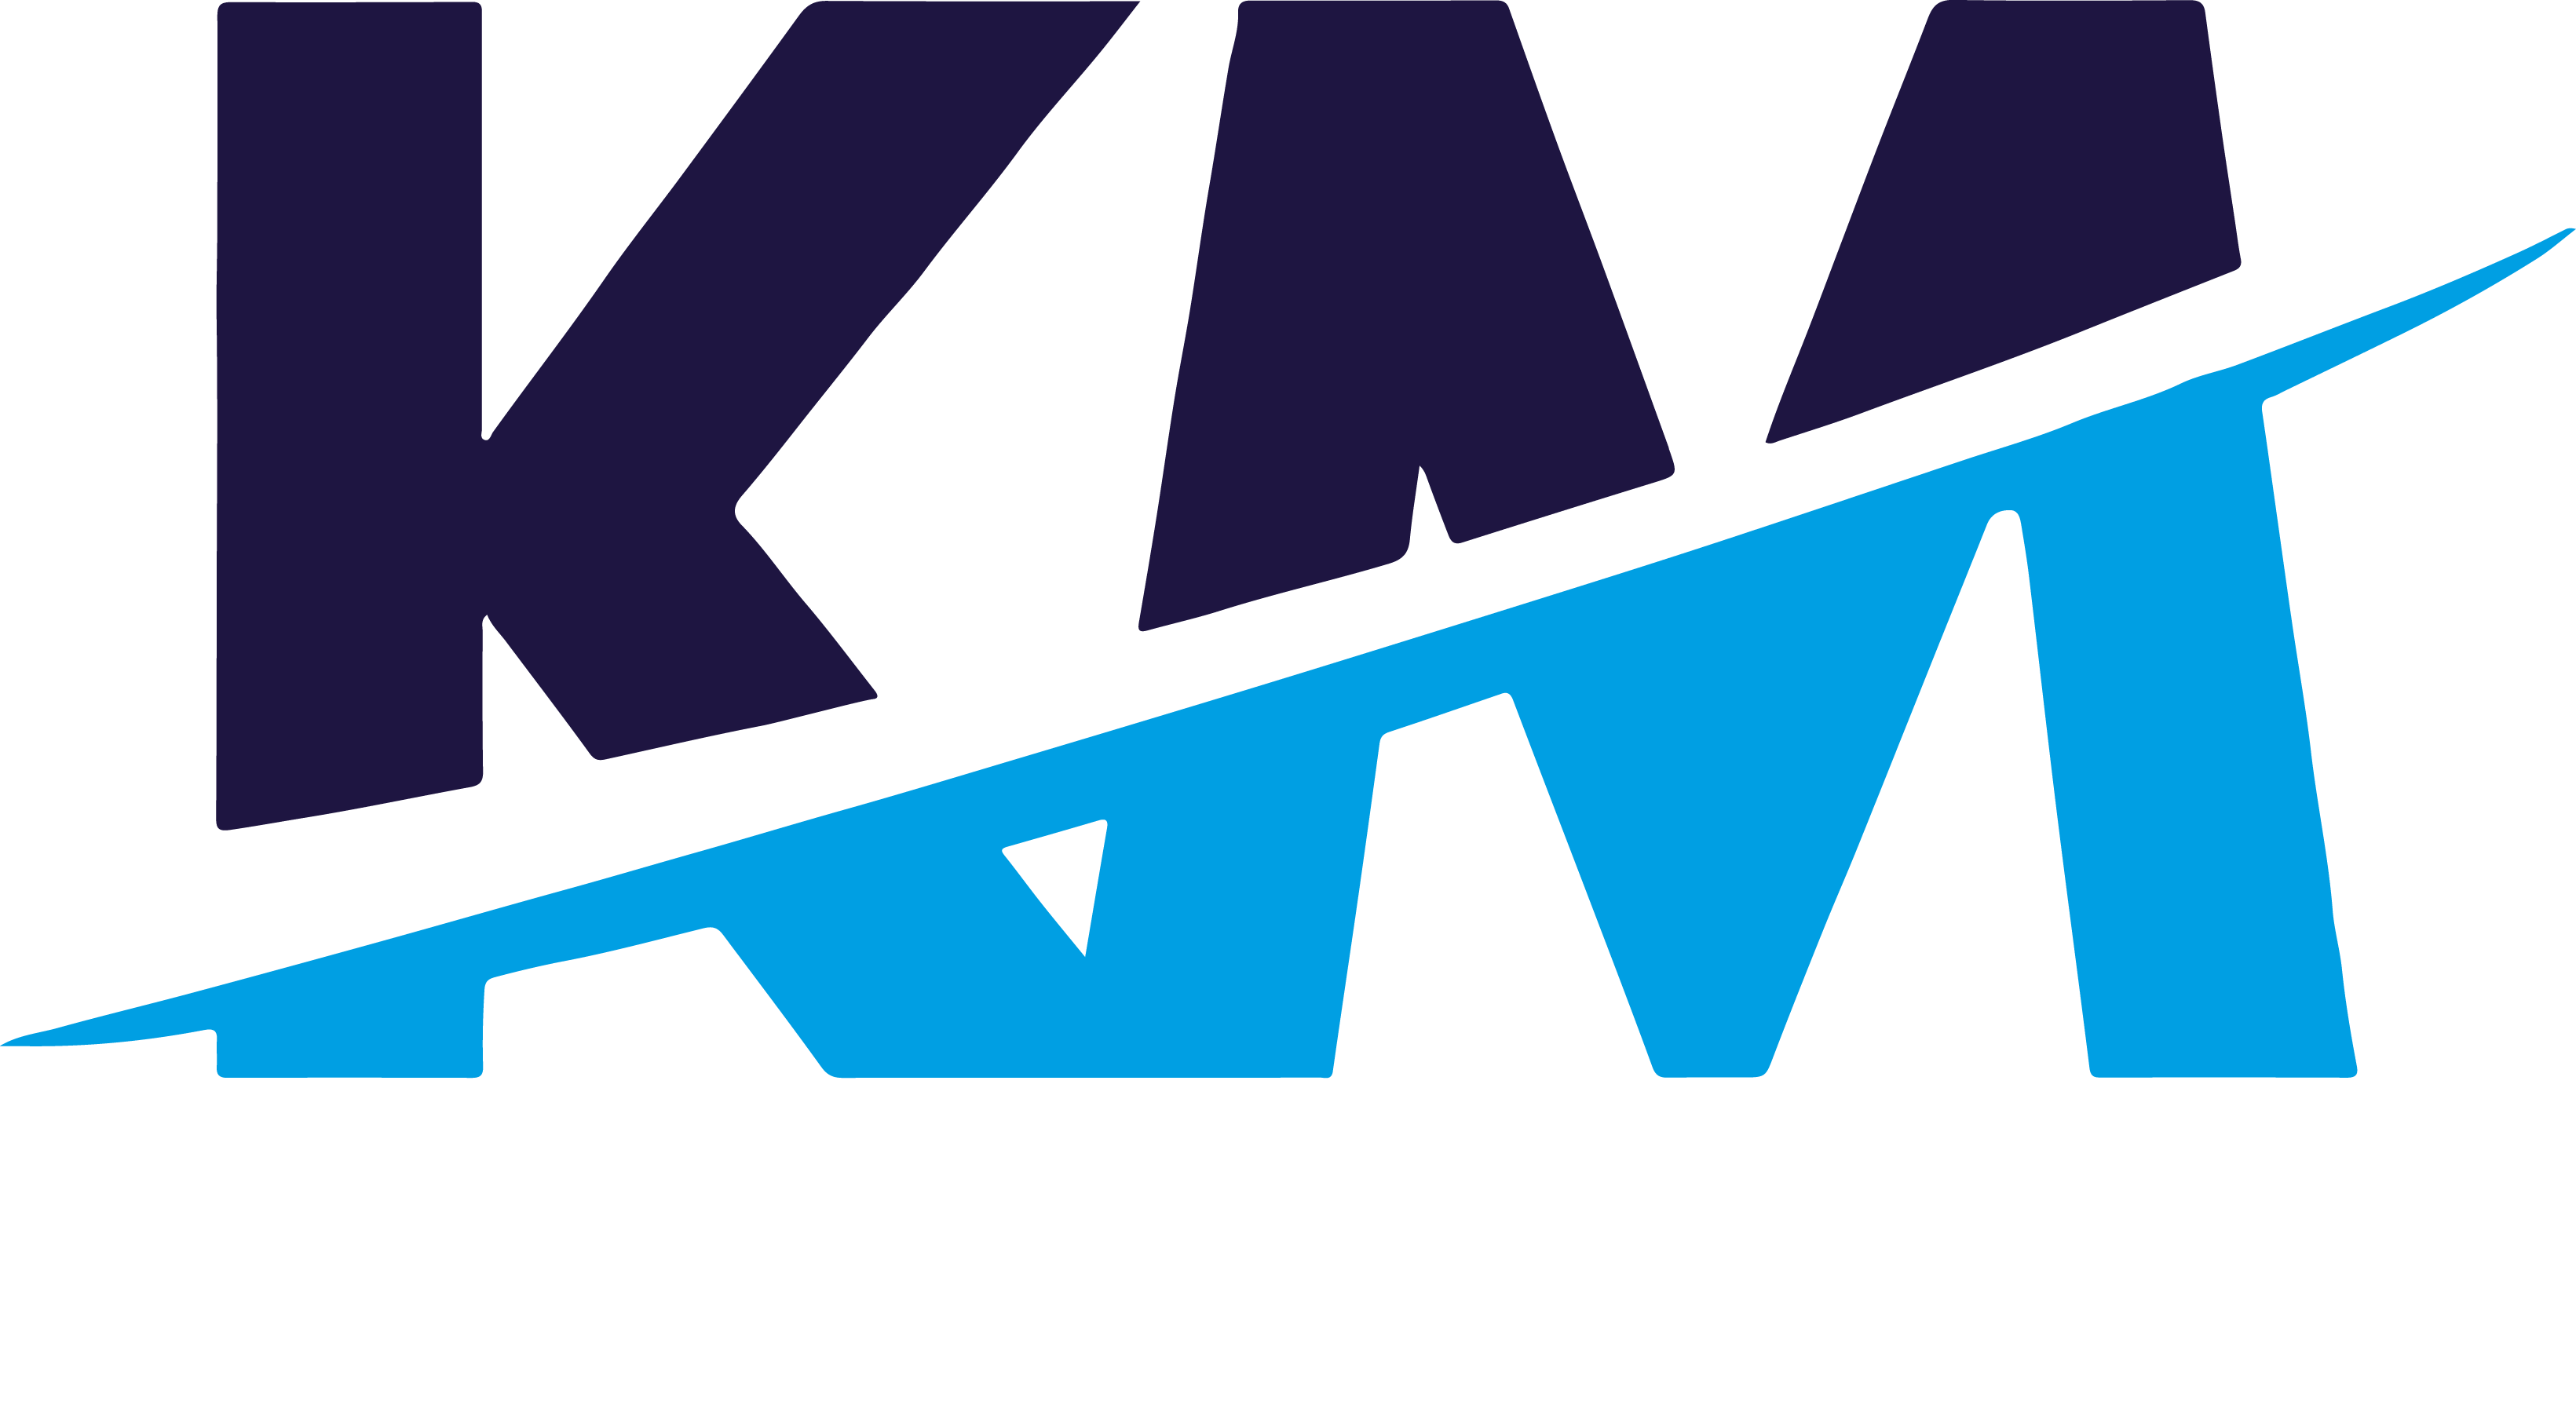 Km логотип. Км профиль логотип. Картинка km. Km лого Design. Сайт км профиль